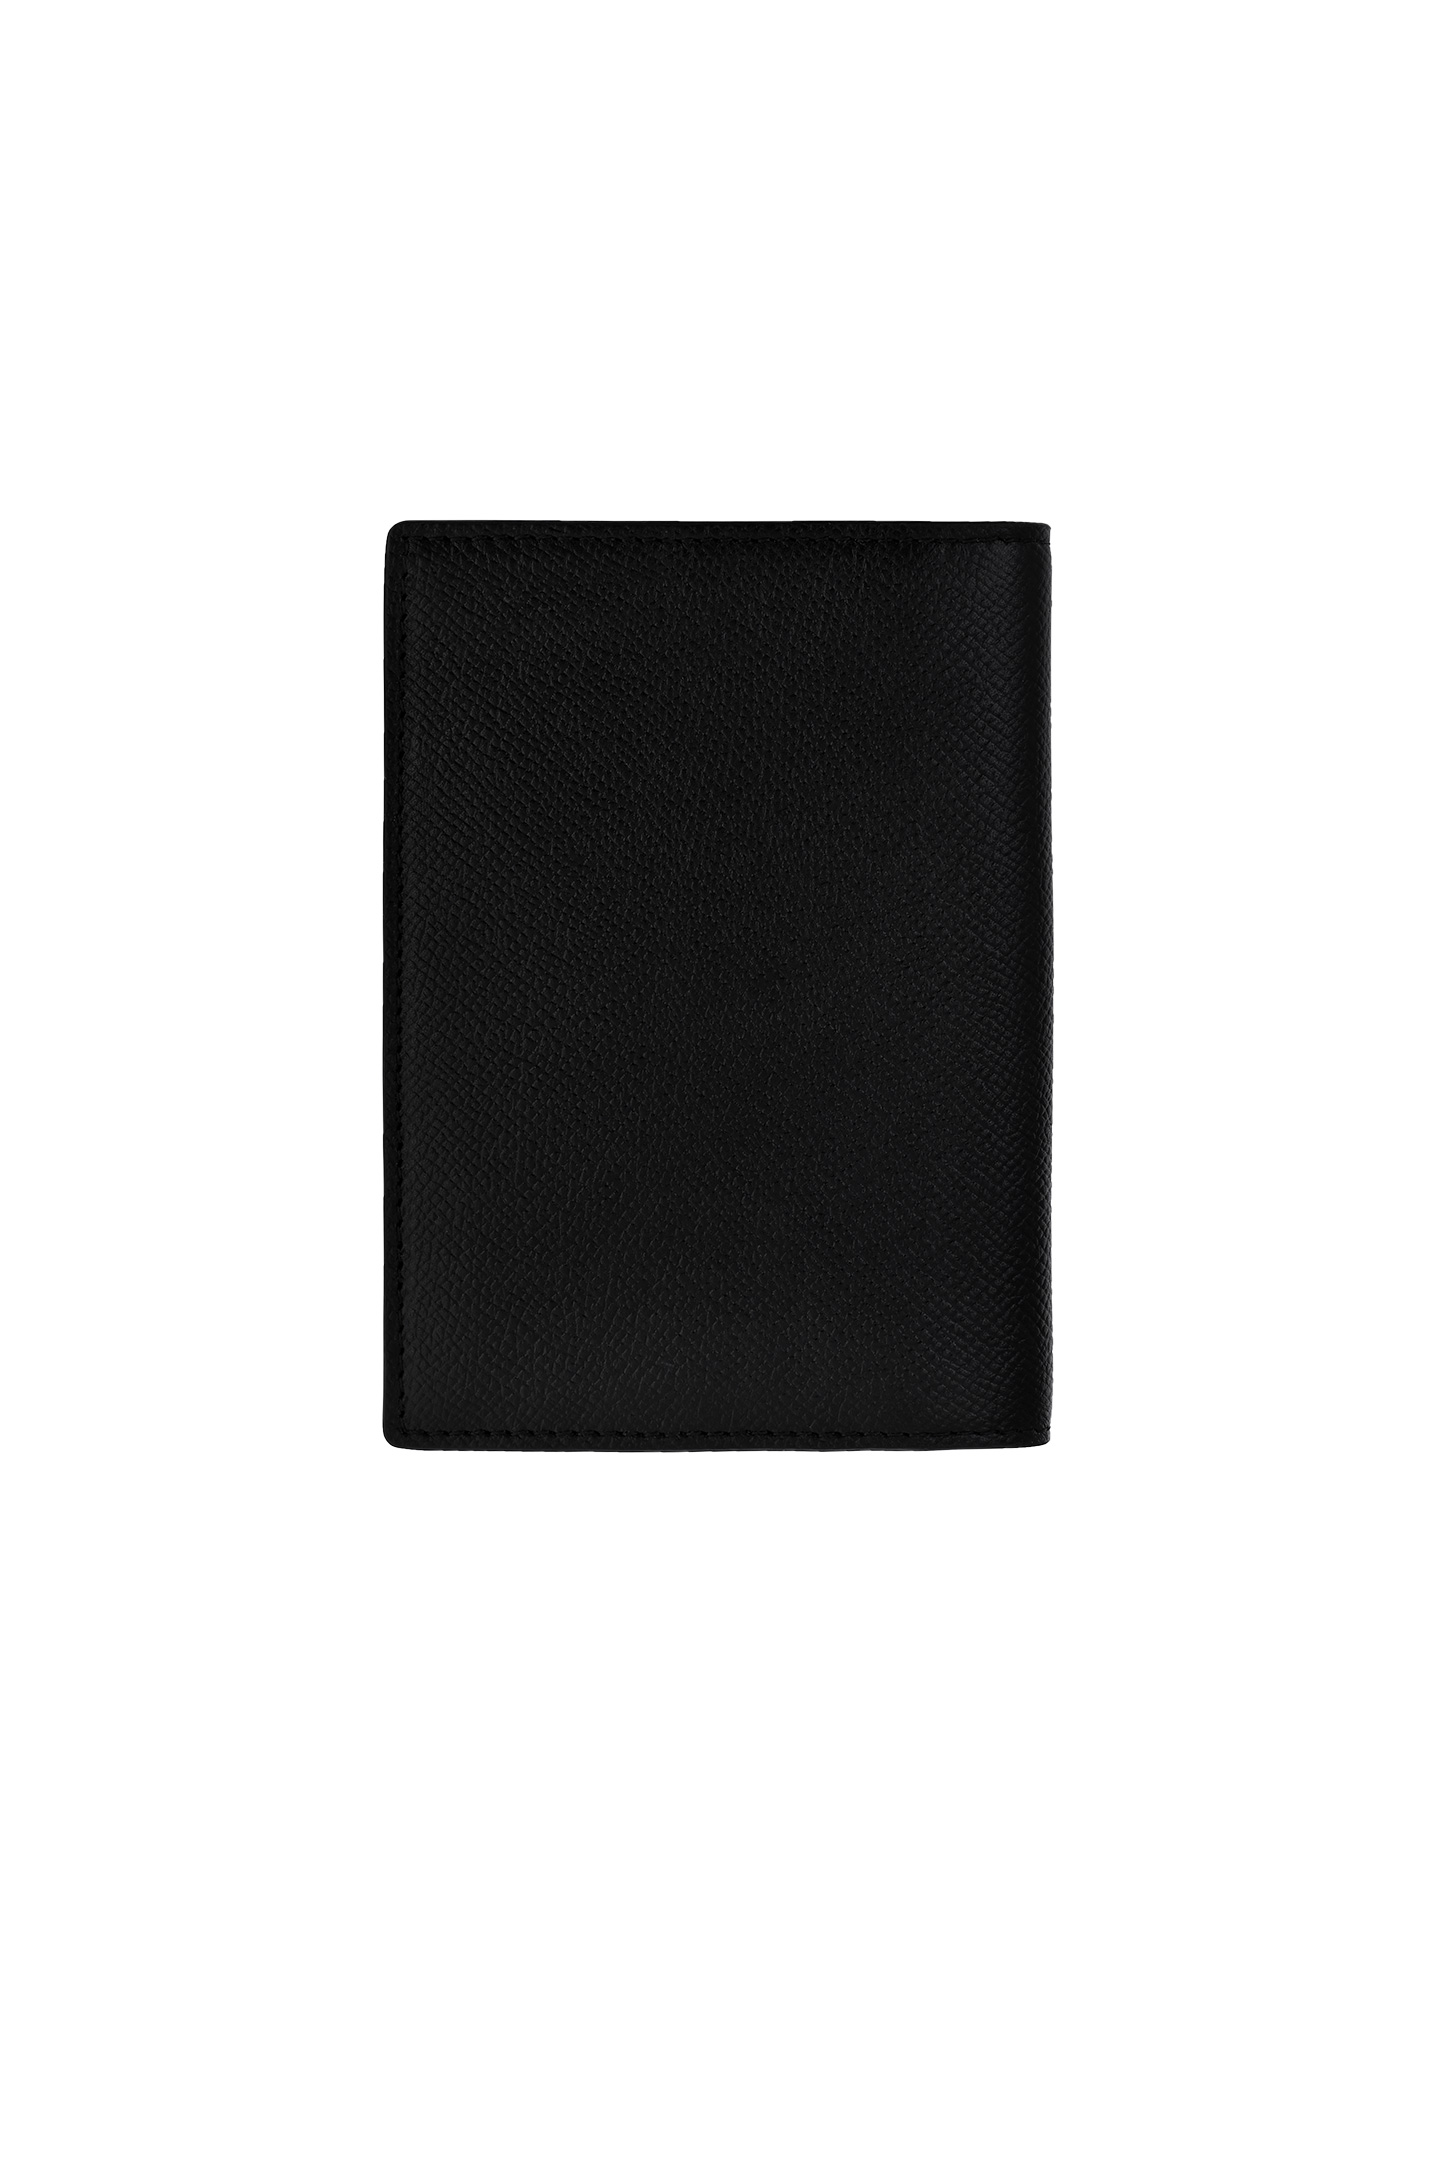 Обложка для паспорта SANTONI UFPPA2379FO-ANCFN01, цвет: Черный, Женский